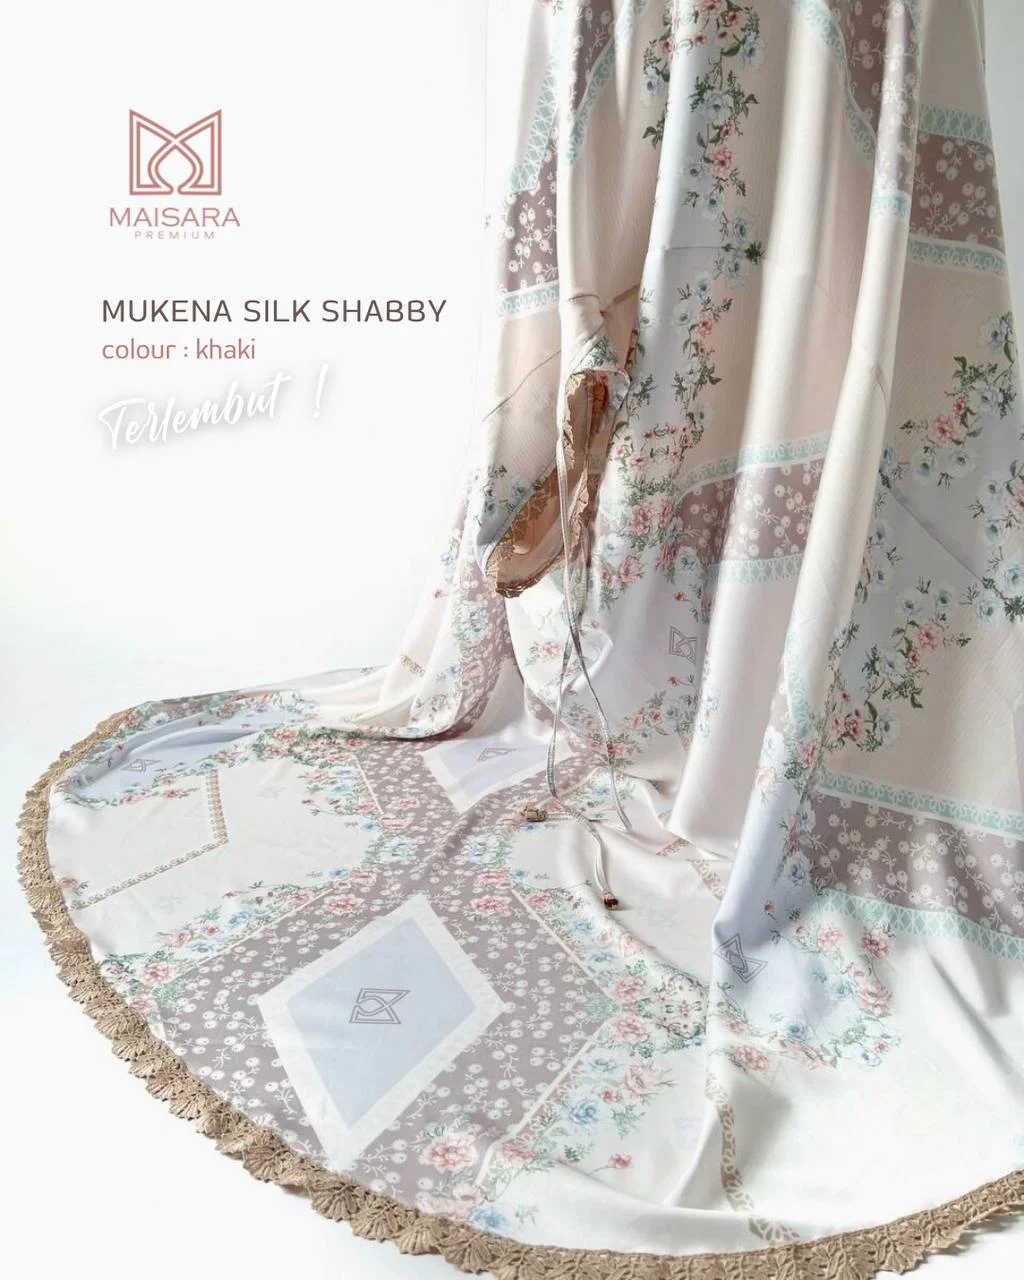 mukena silk shabby maisara - khaki